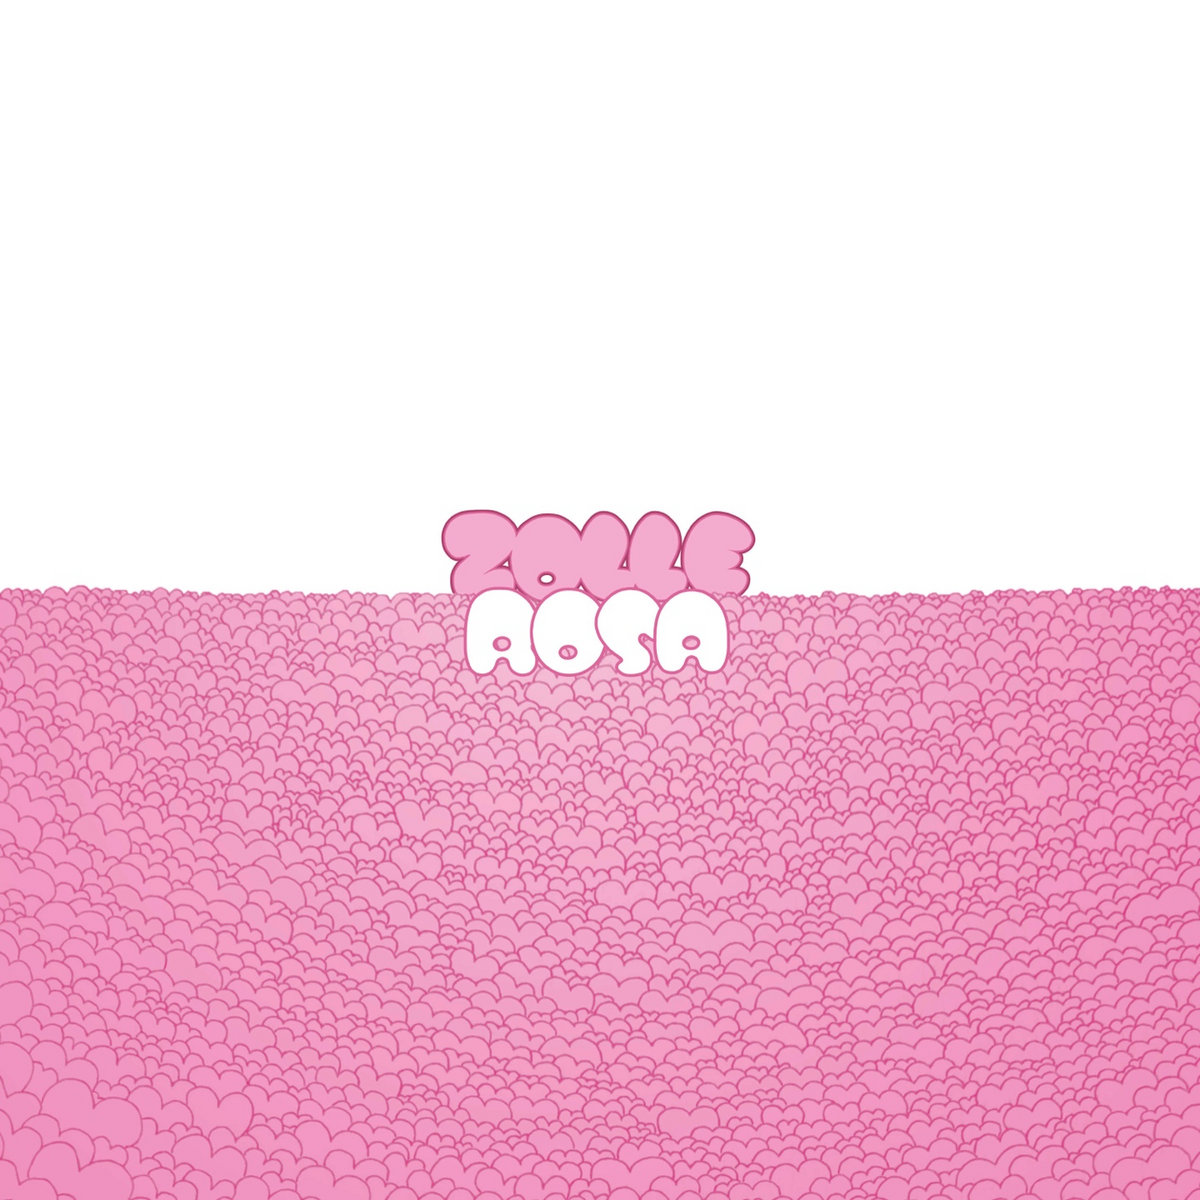 ‘ROSA’ è il nuovo album degli Zolle, in uscita il 3 maggio 2024 per Subsound Records.